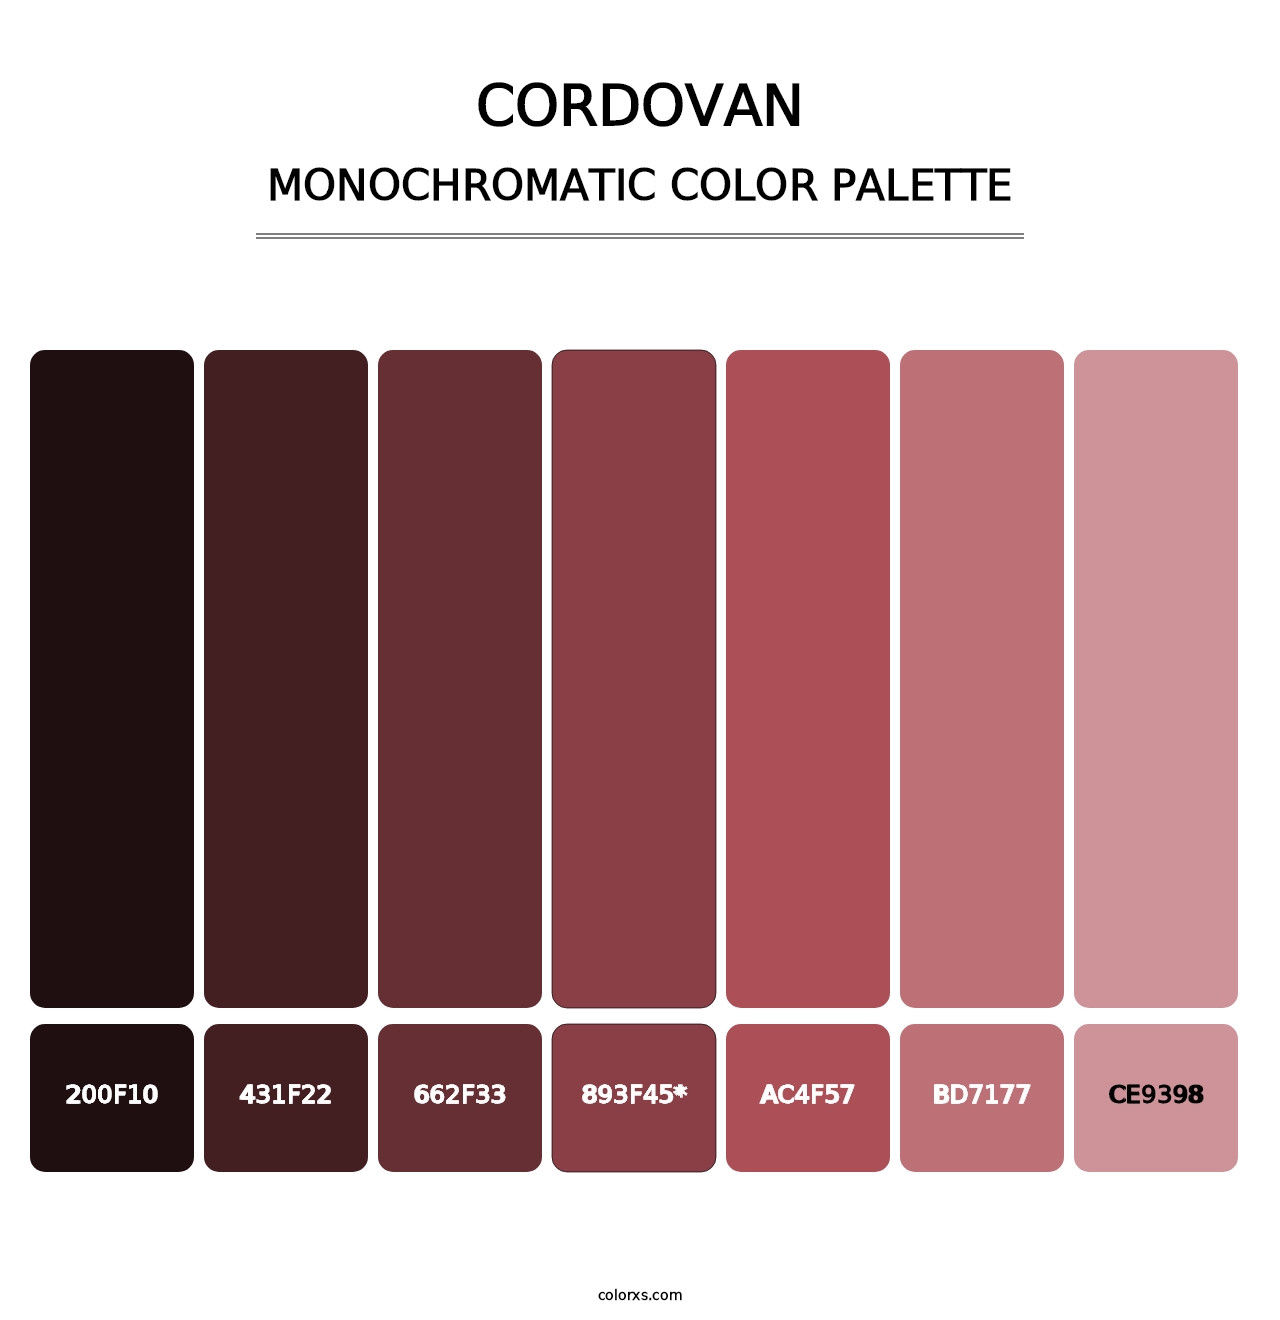 Cordovan - Monochromatic Color Palette